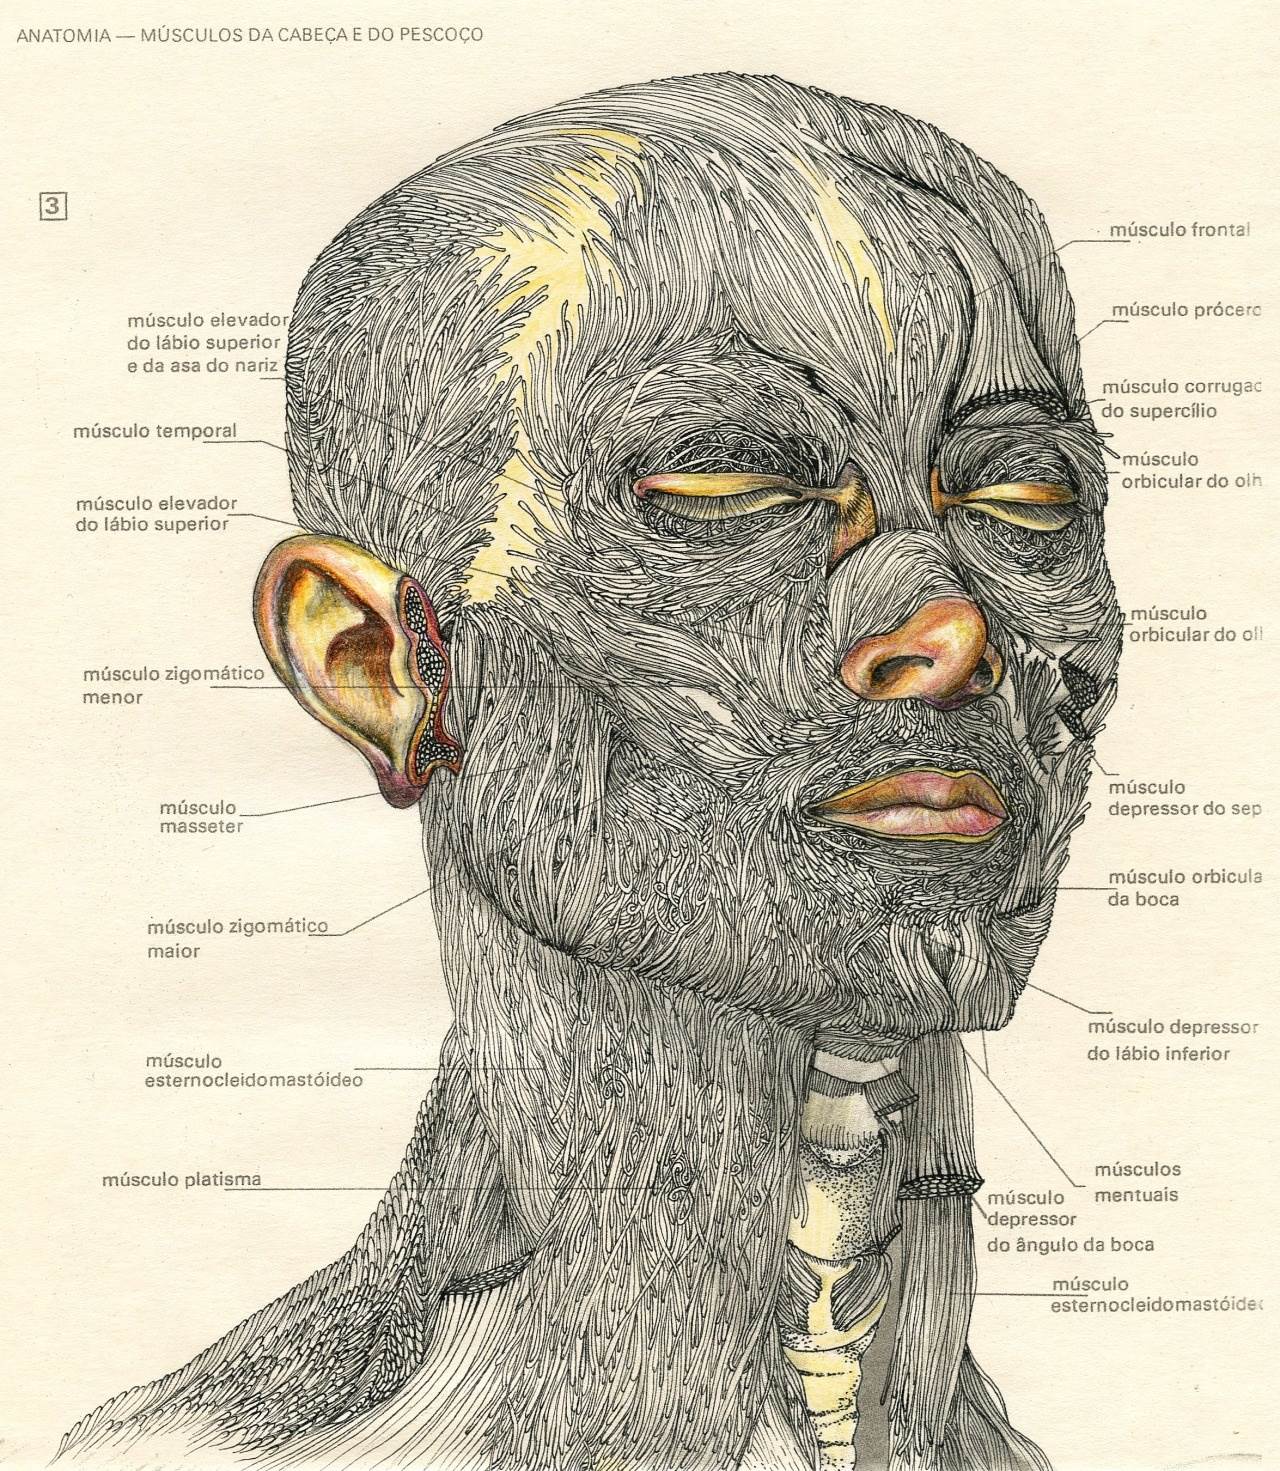 Da cabeça e pescoço, original Body  Drawing and Illustration by Lucy Valente Pereira